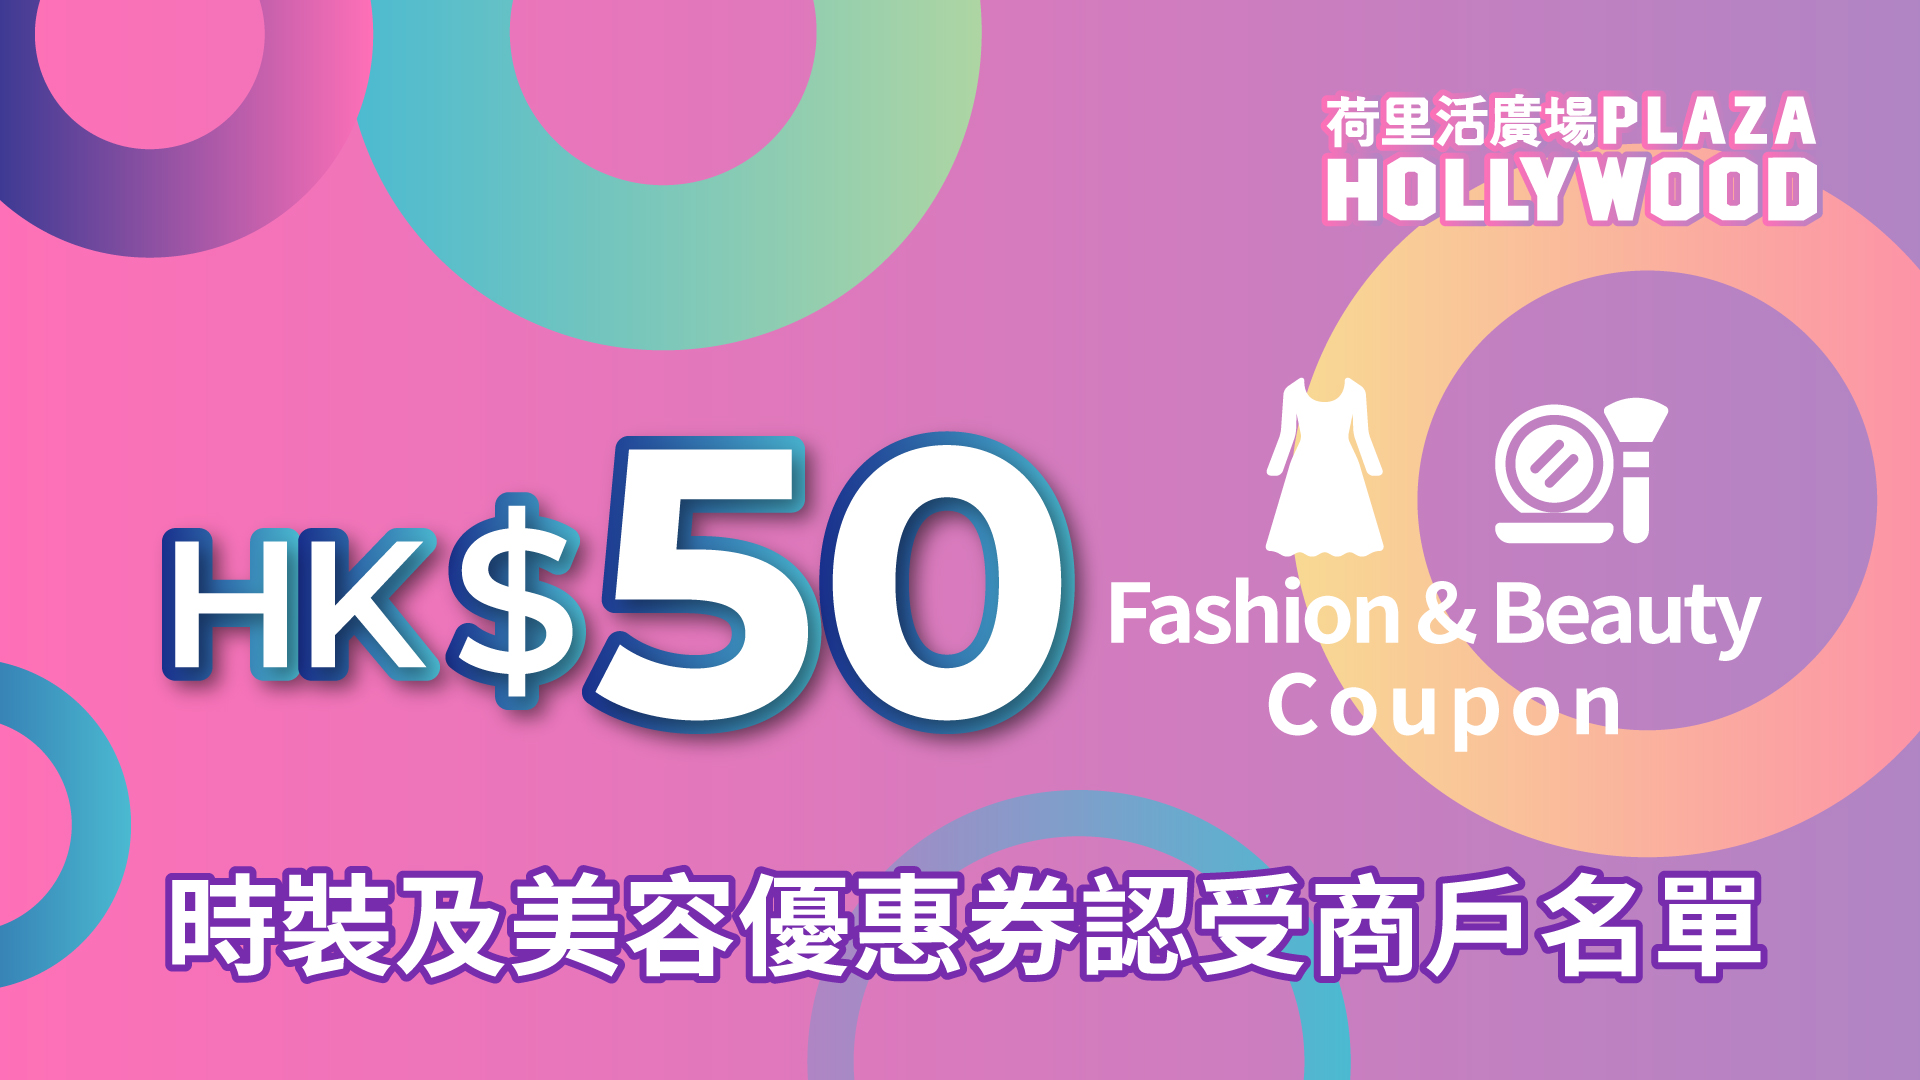 荷里活廣場HK$50指定商戶時裝及美容優惠券 - 參與之指定商戶